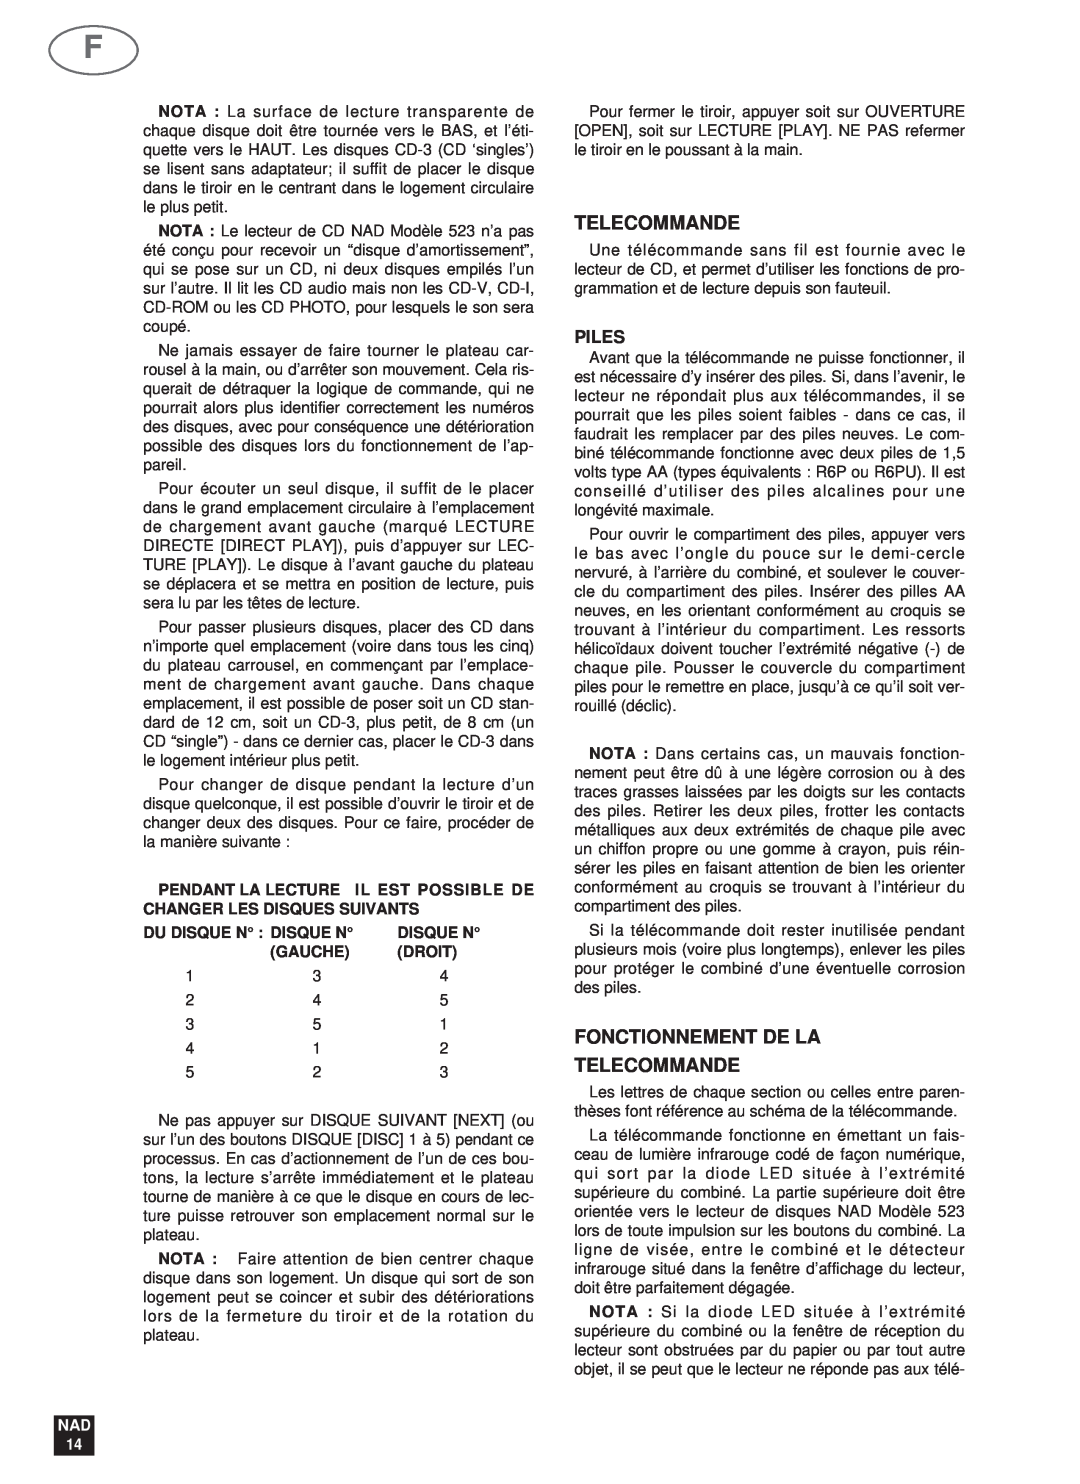 NAD 523 owner manual Fonctionnement De La Telecommande, Piles, Du Disque N : Disque N, Gauche, Droit, Nad 